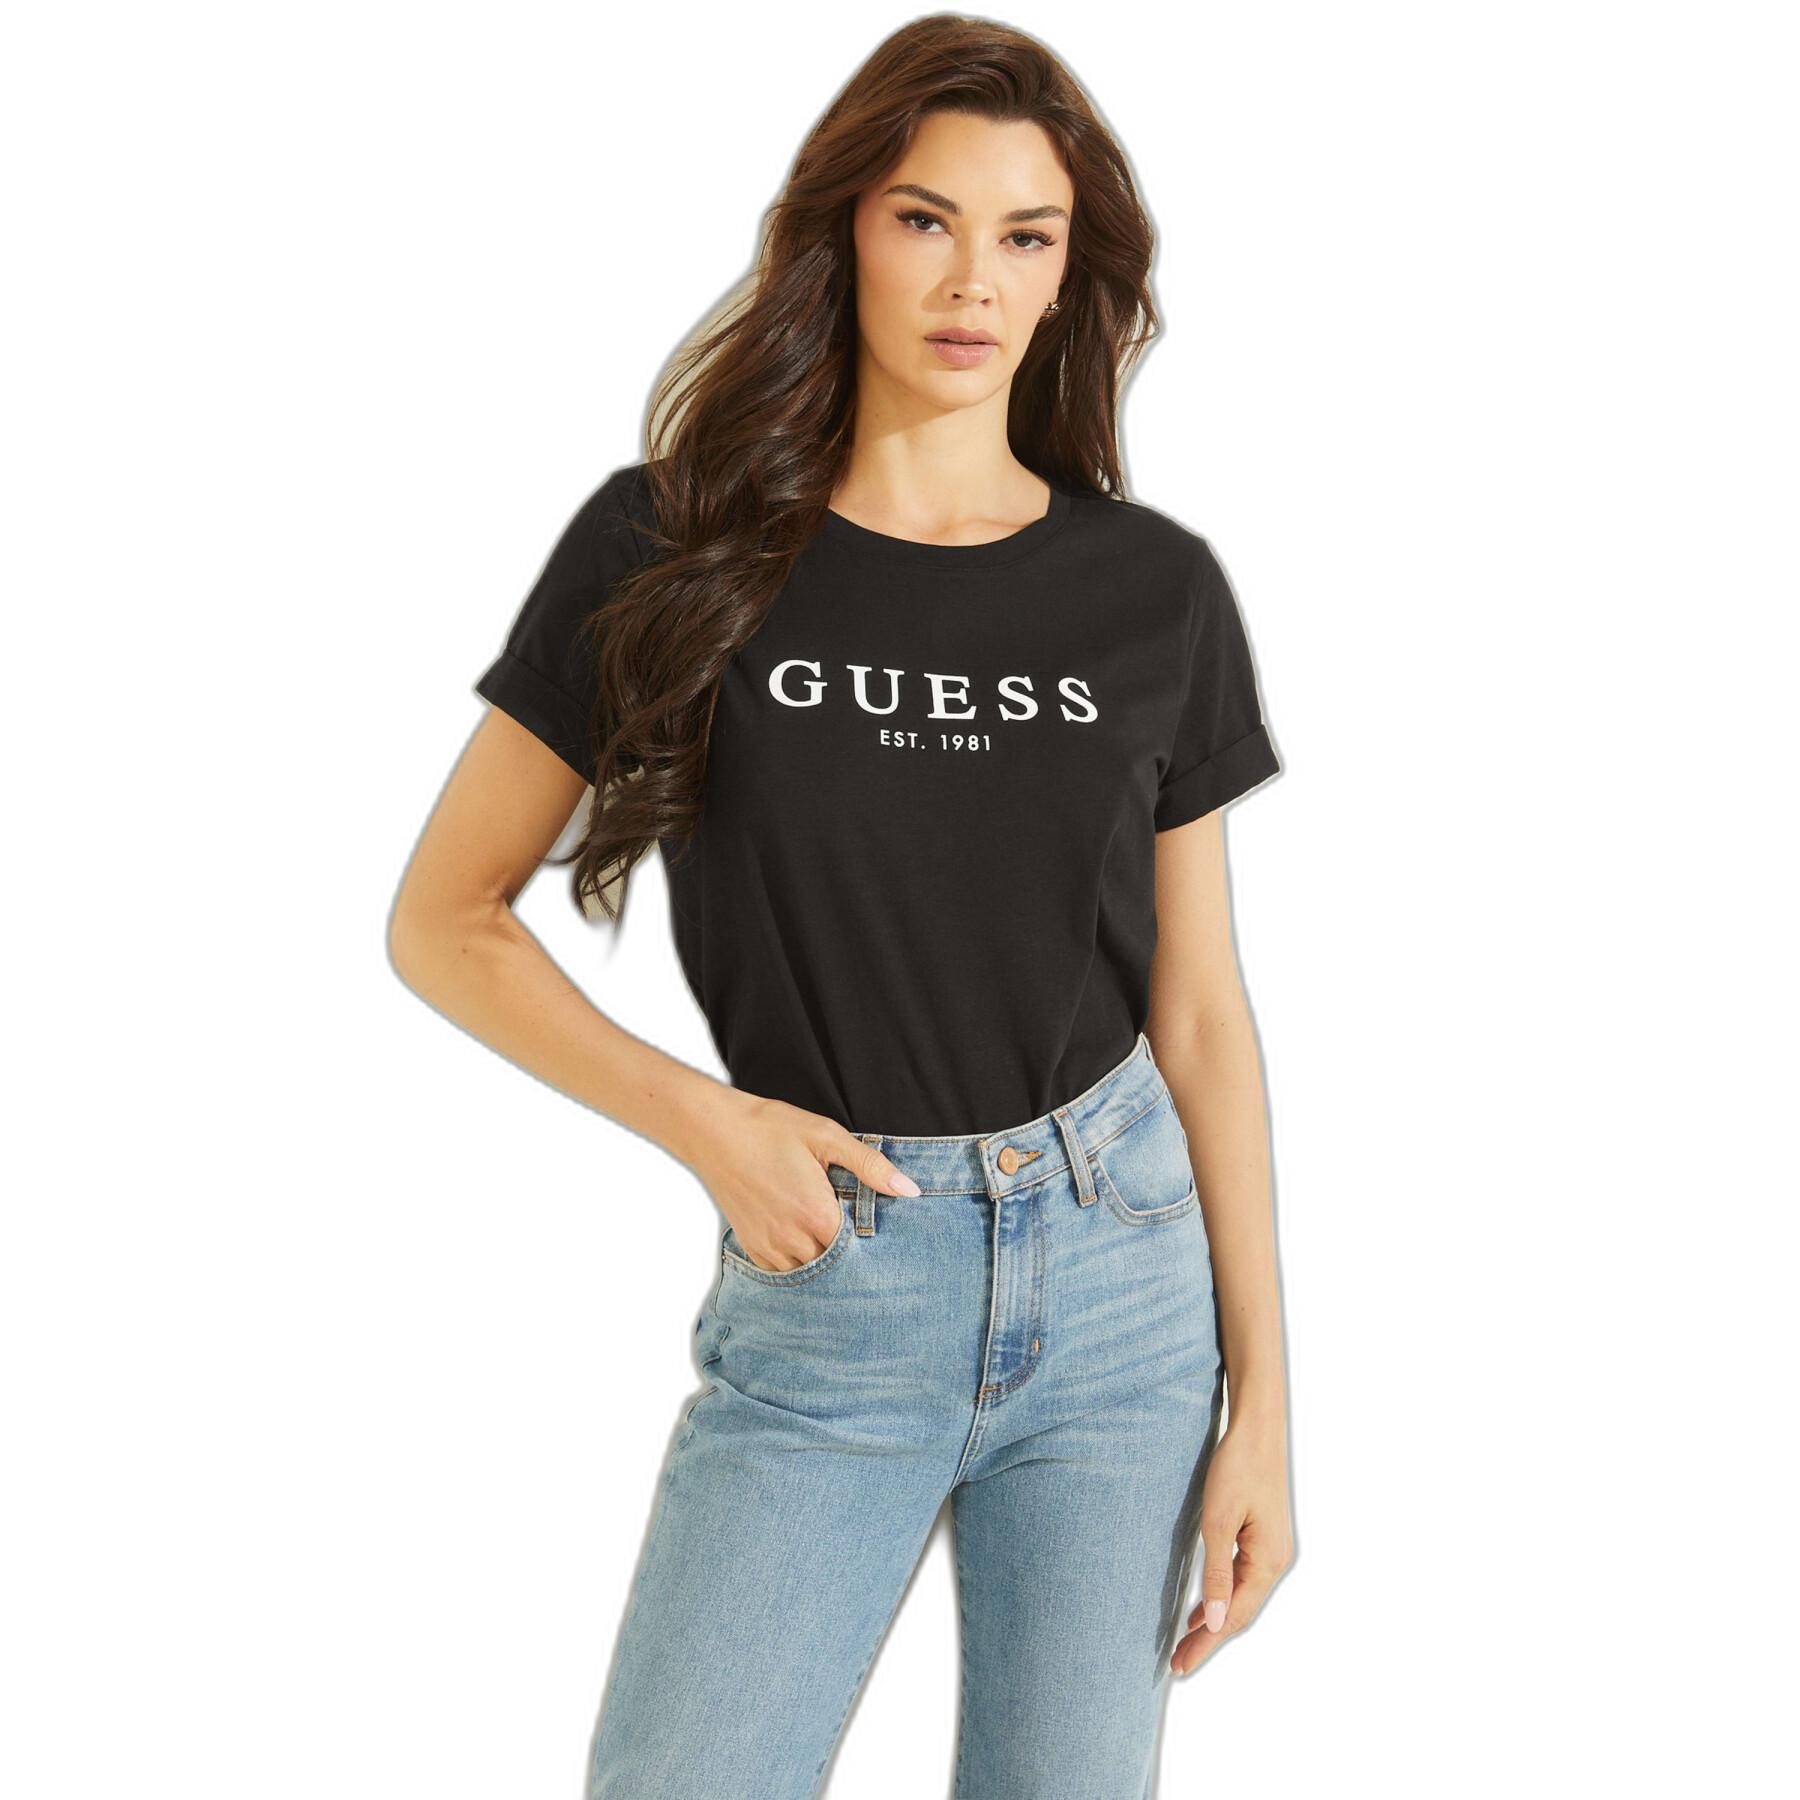 T-shirt femme Guess ES 1981 Roll Cuff